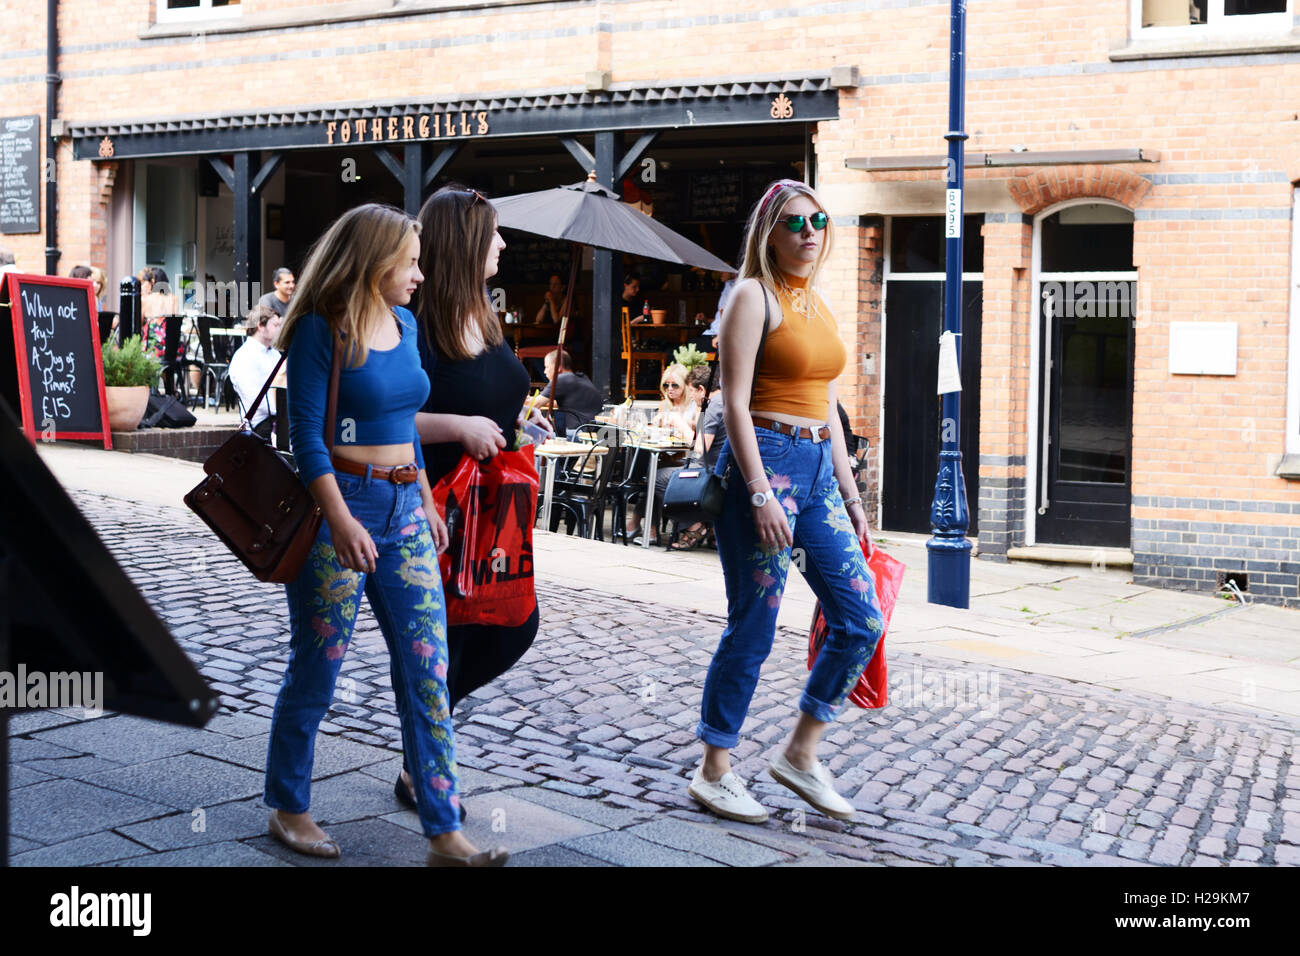 Three girls, fashionably dressed, Castle Road, Nottingham, England. Stock Photo